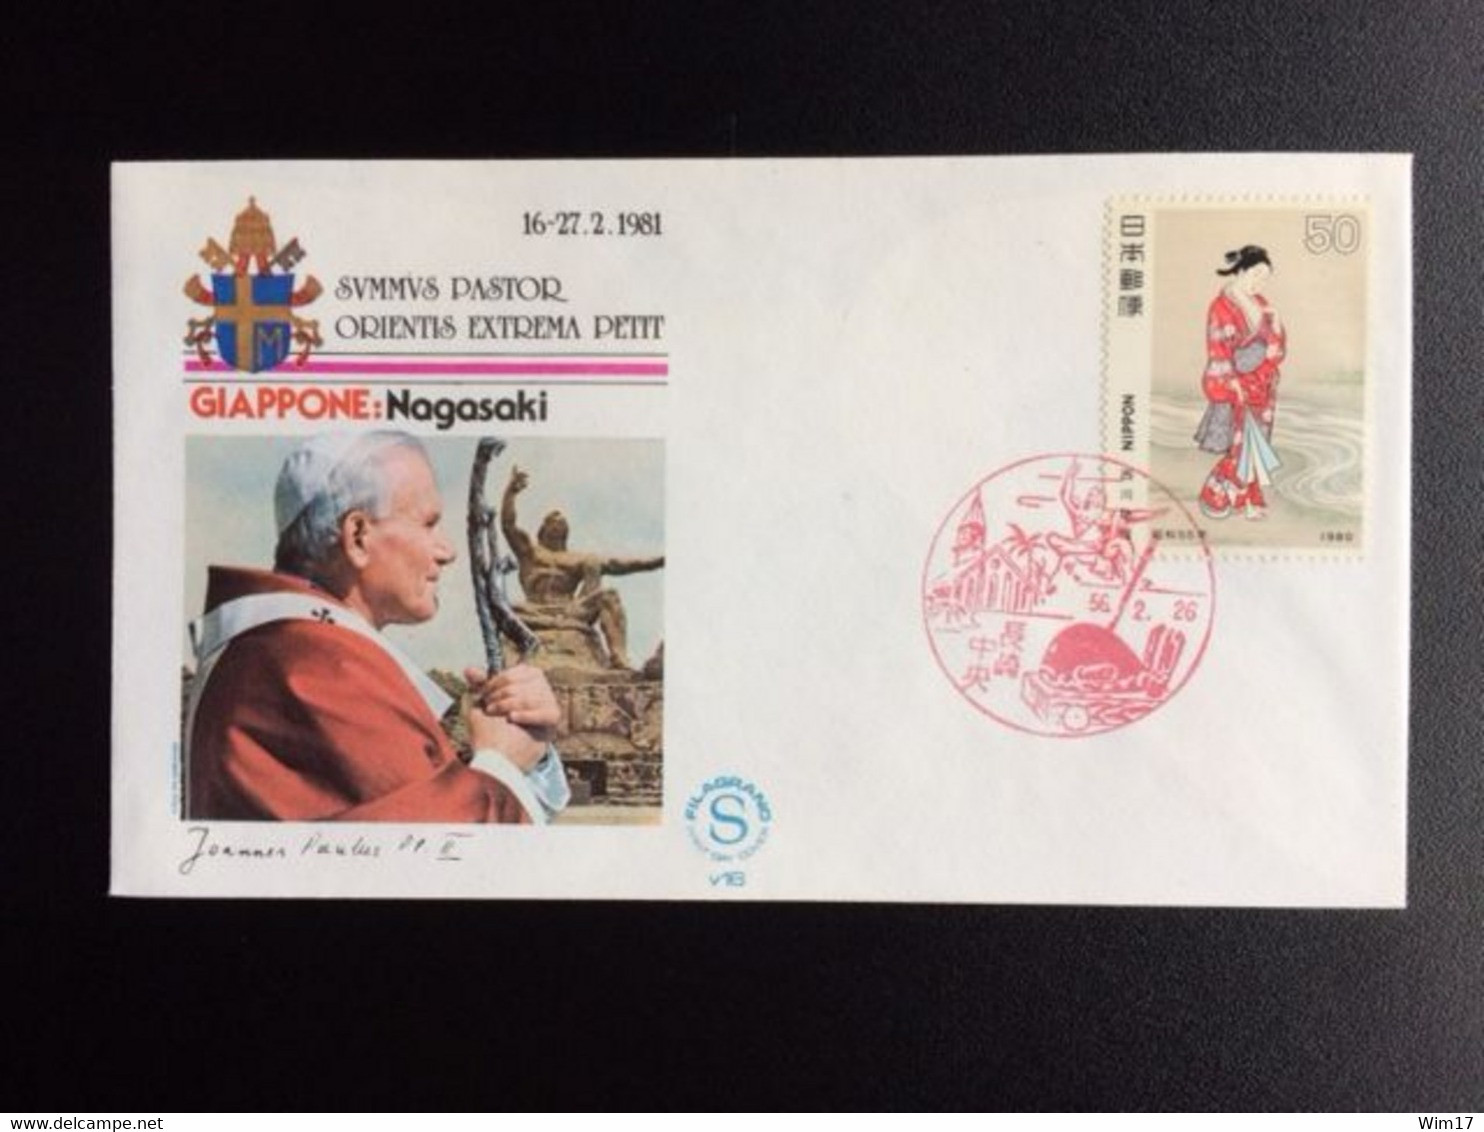 JAPAN 1981 POPE VISIT TO JAPAN 16-27 FEBR. 1981 - Omslagen